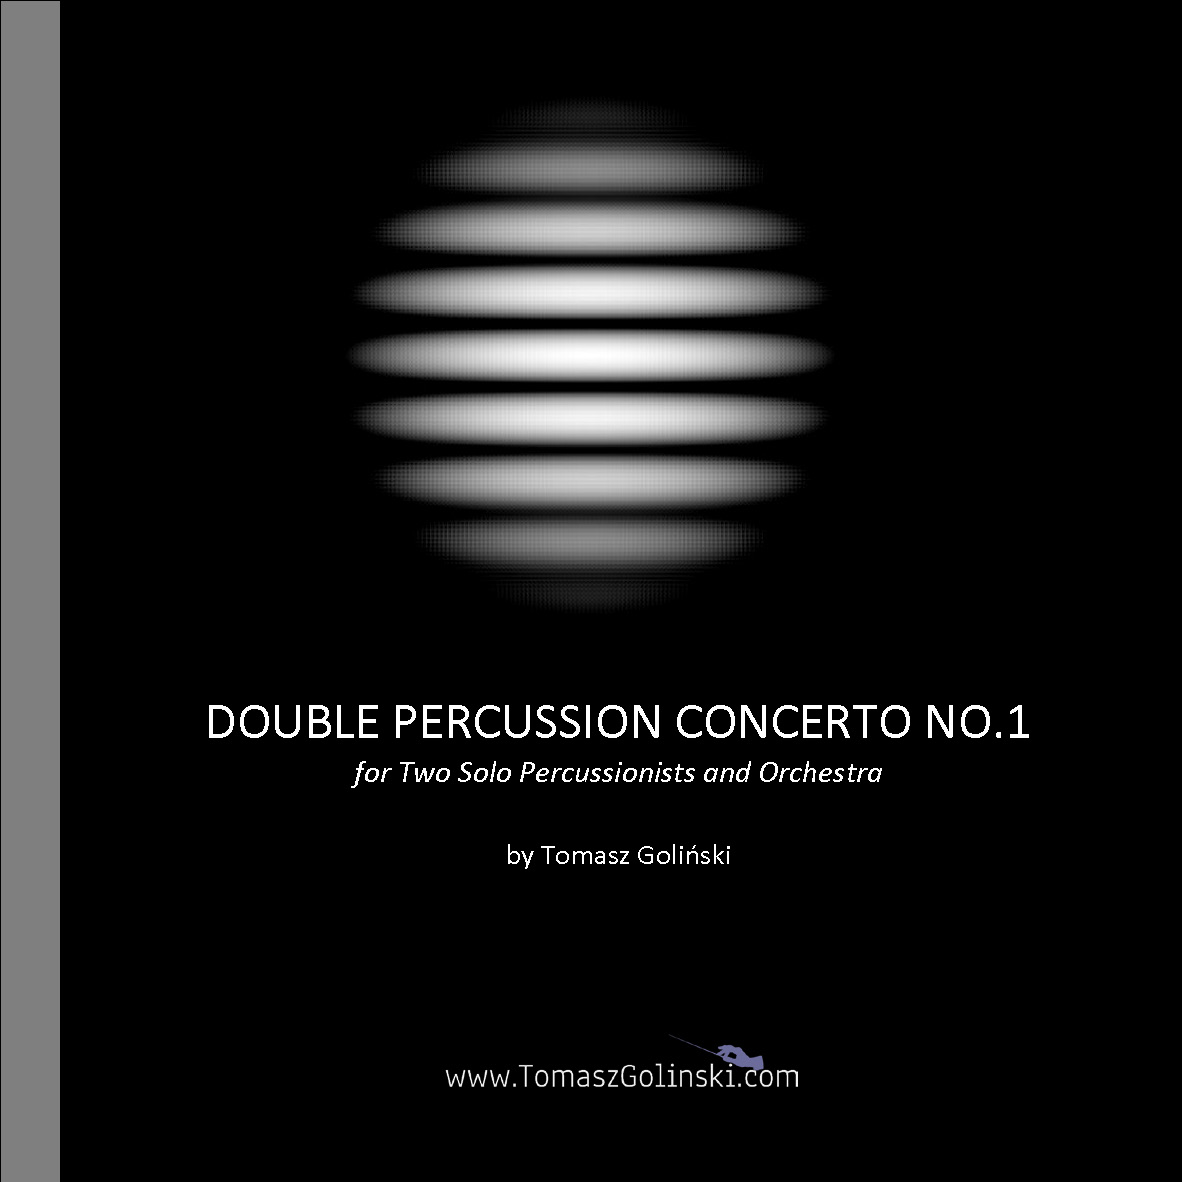 Double Percussion Concerto No. 1